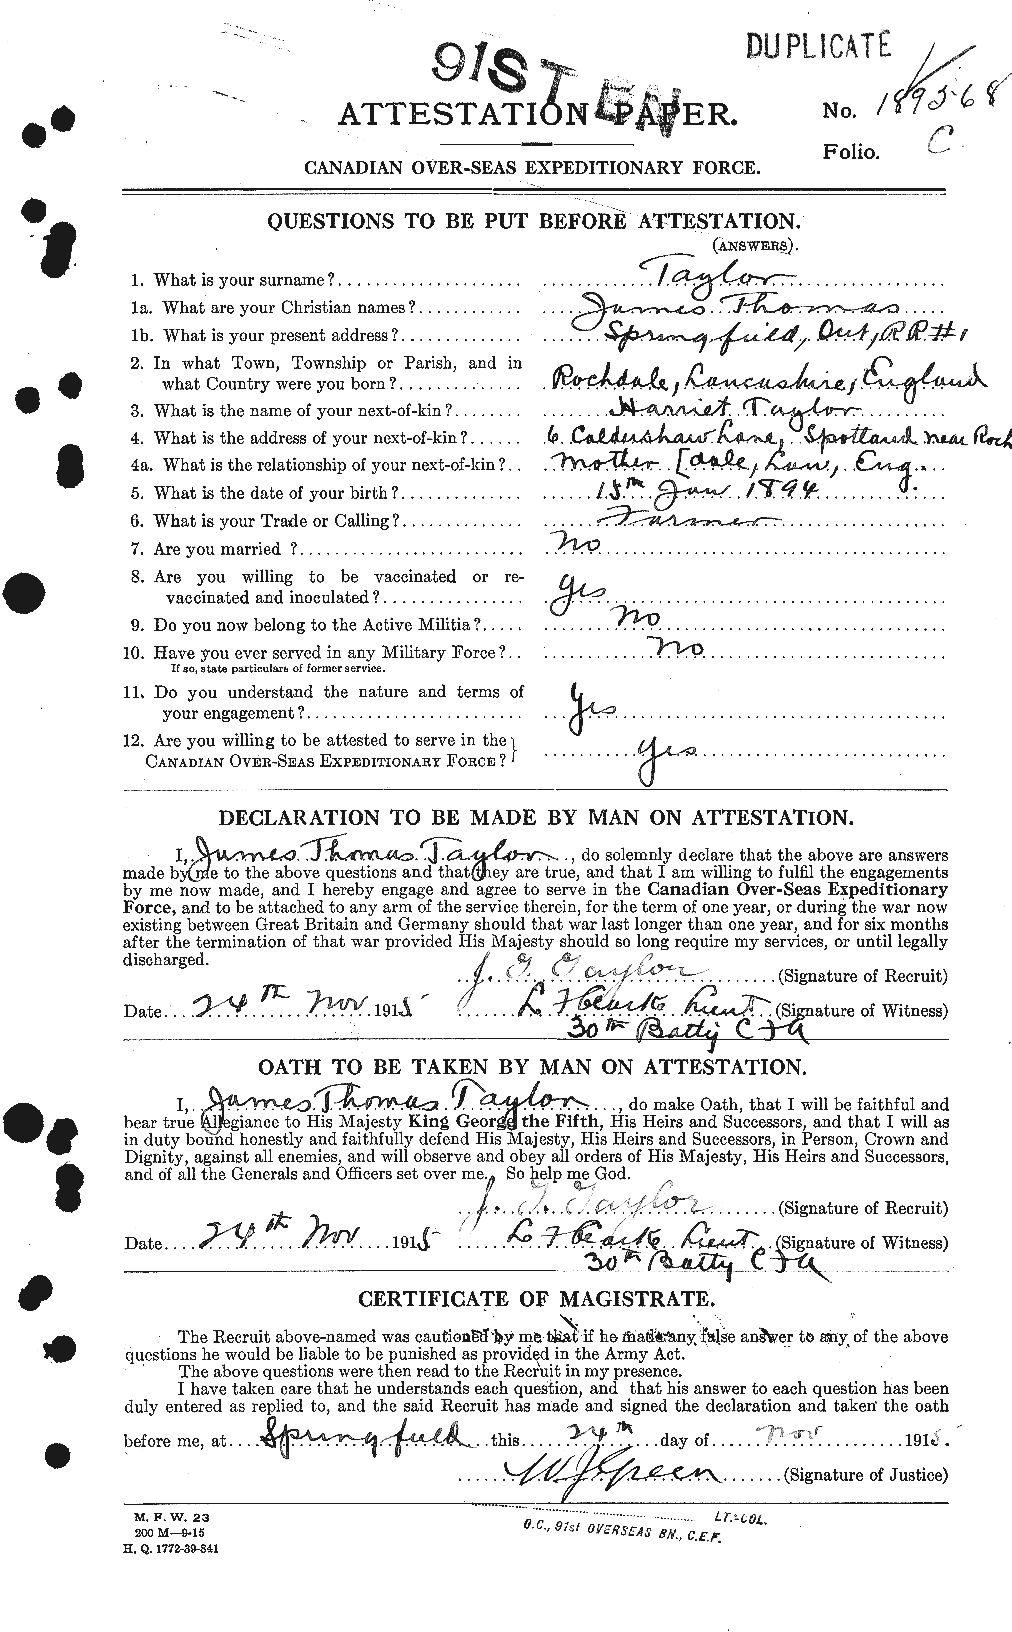 Dossiers du Personnel de la Première Guerre mondiale - CEC 626958a